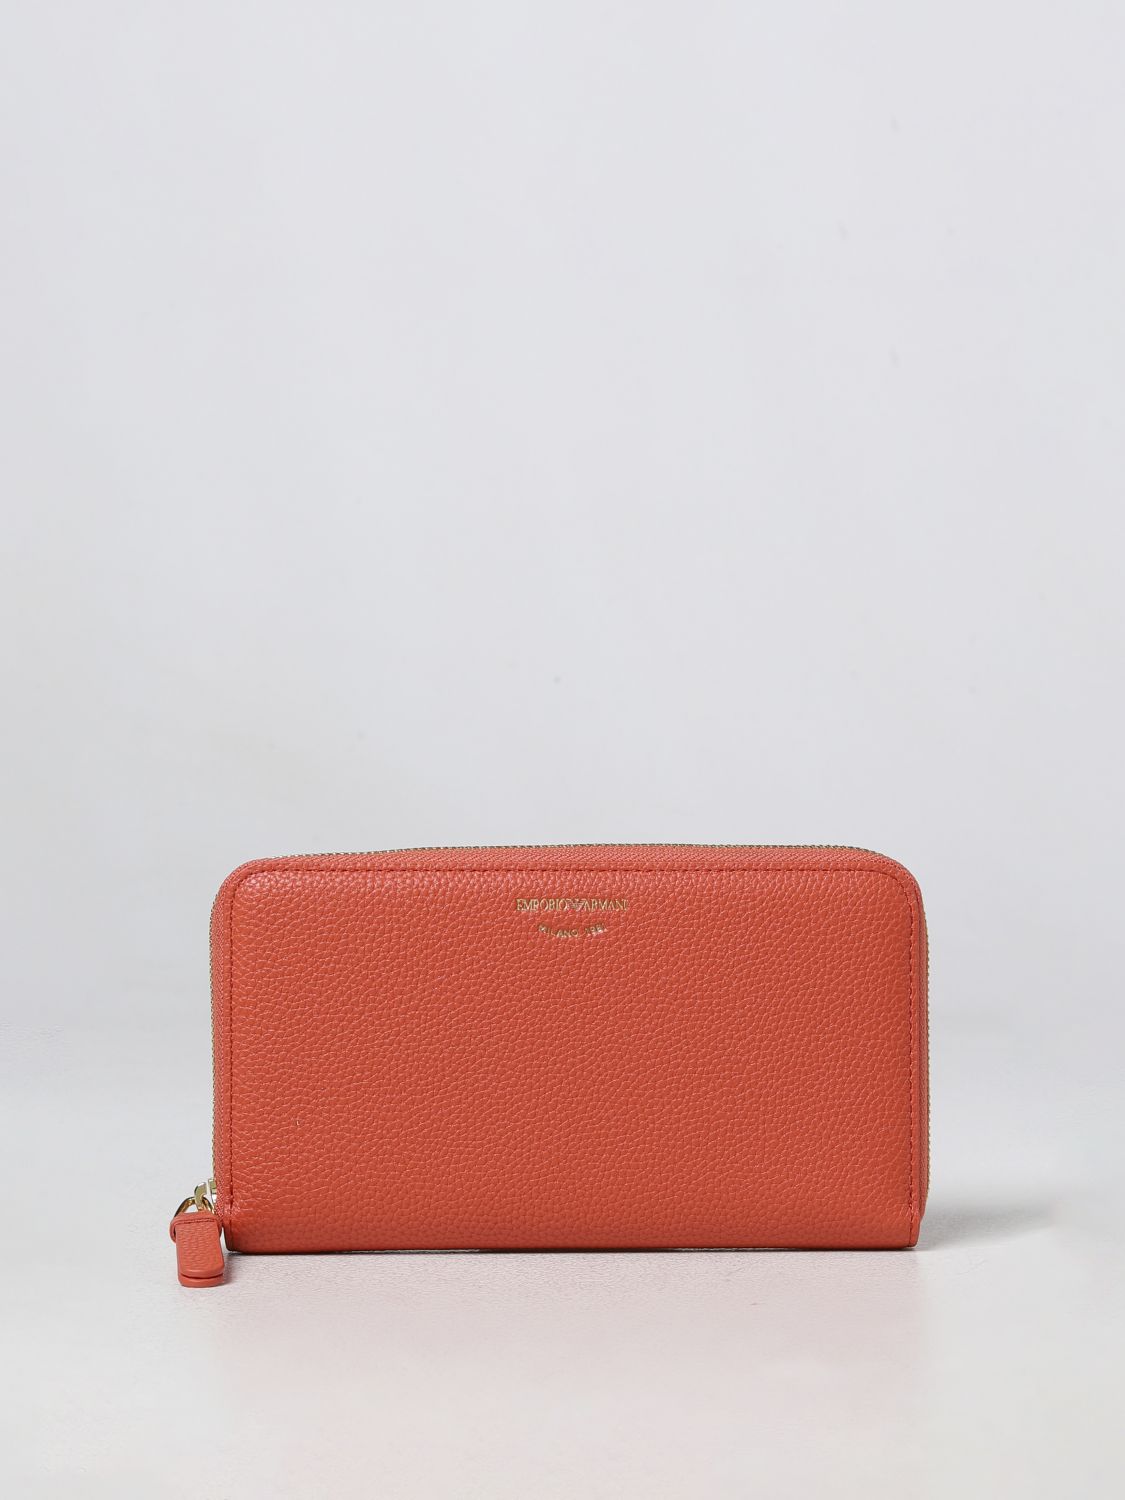 EMPORIO ARMANI: wallet for women - Brick Red | Emporio Armani wallet  Y3H168YFW9B online on 